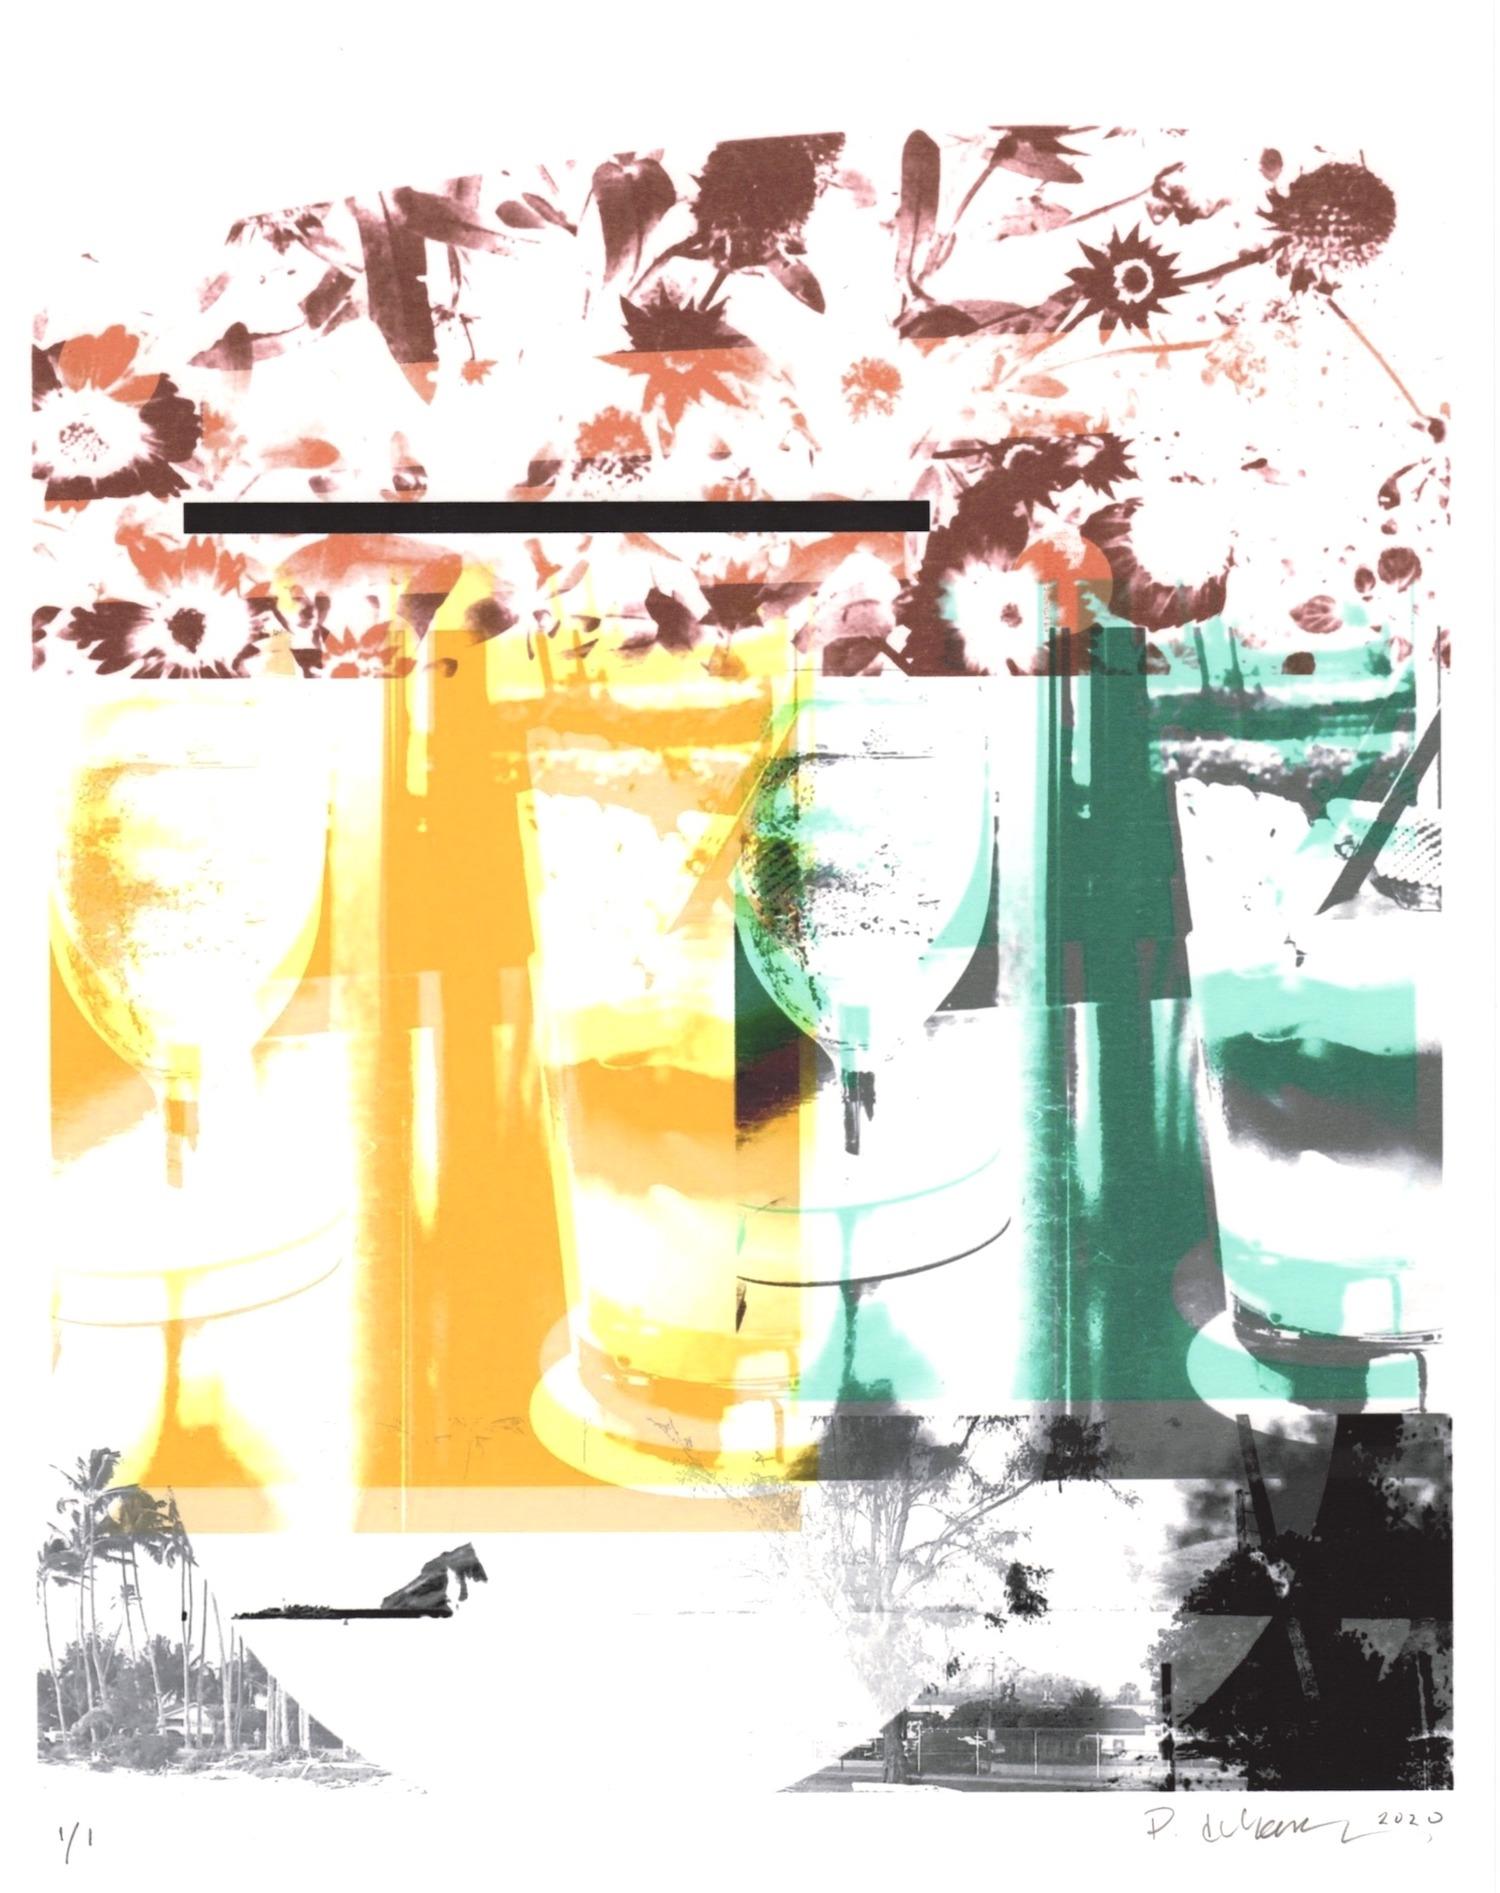 "Rum & Pineapple (Lanai)", abstrakt, gelb, grün, schwarz, Fotografie